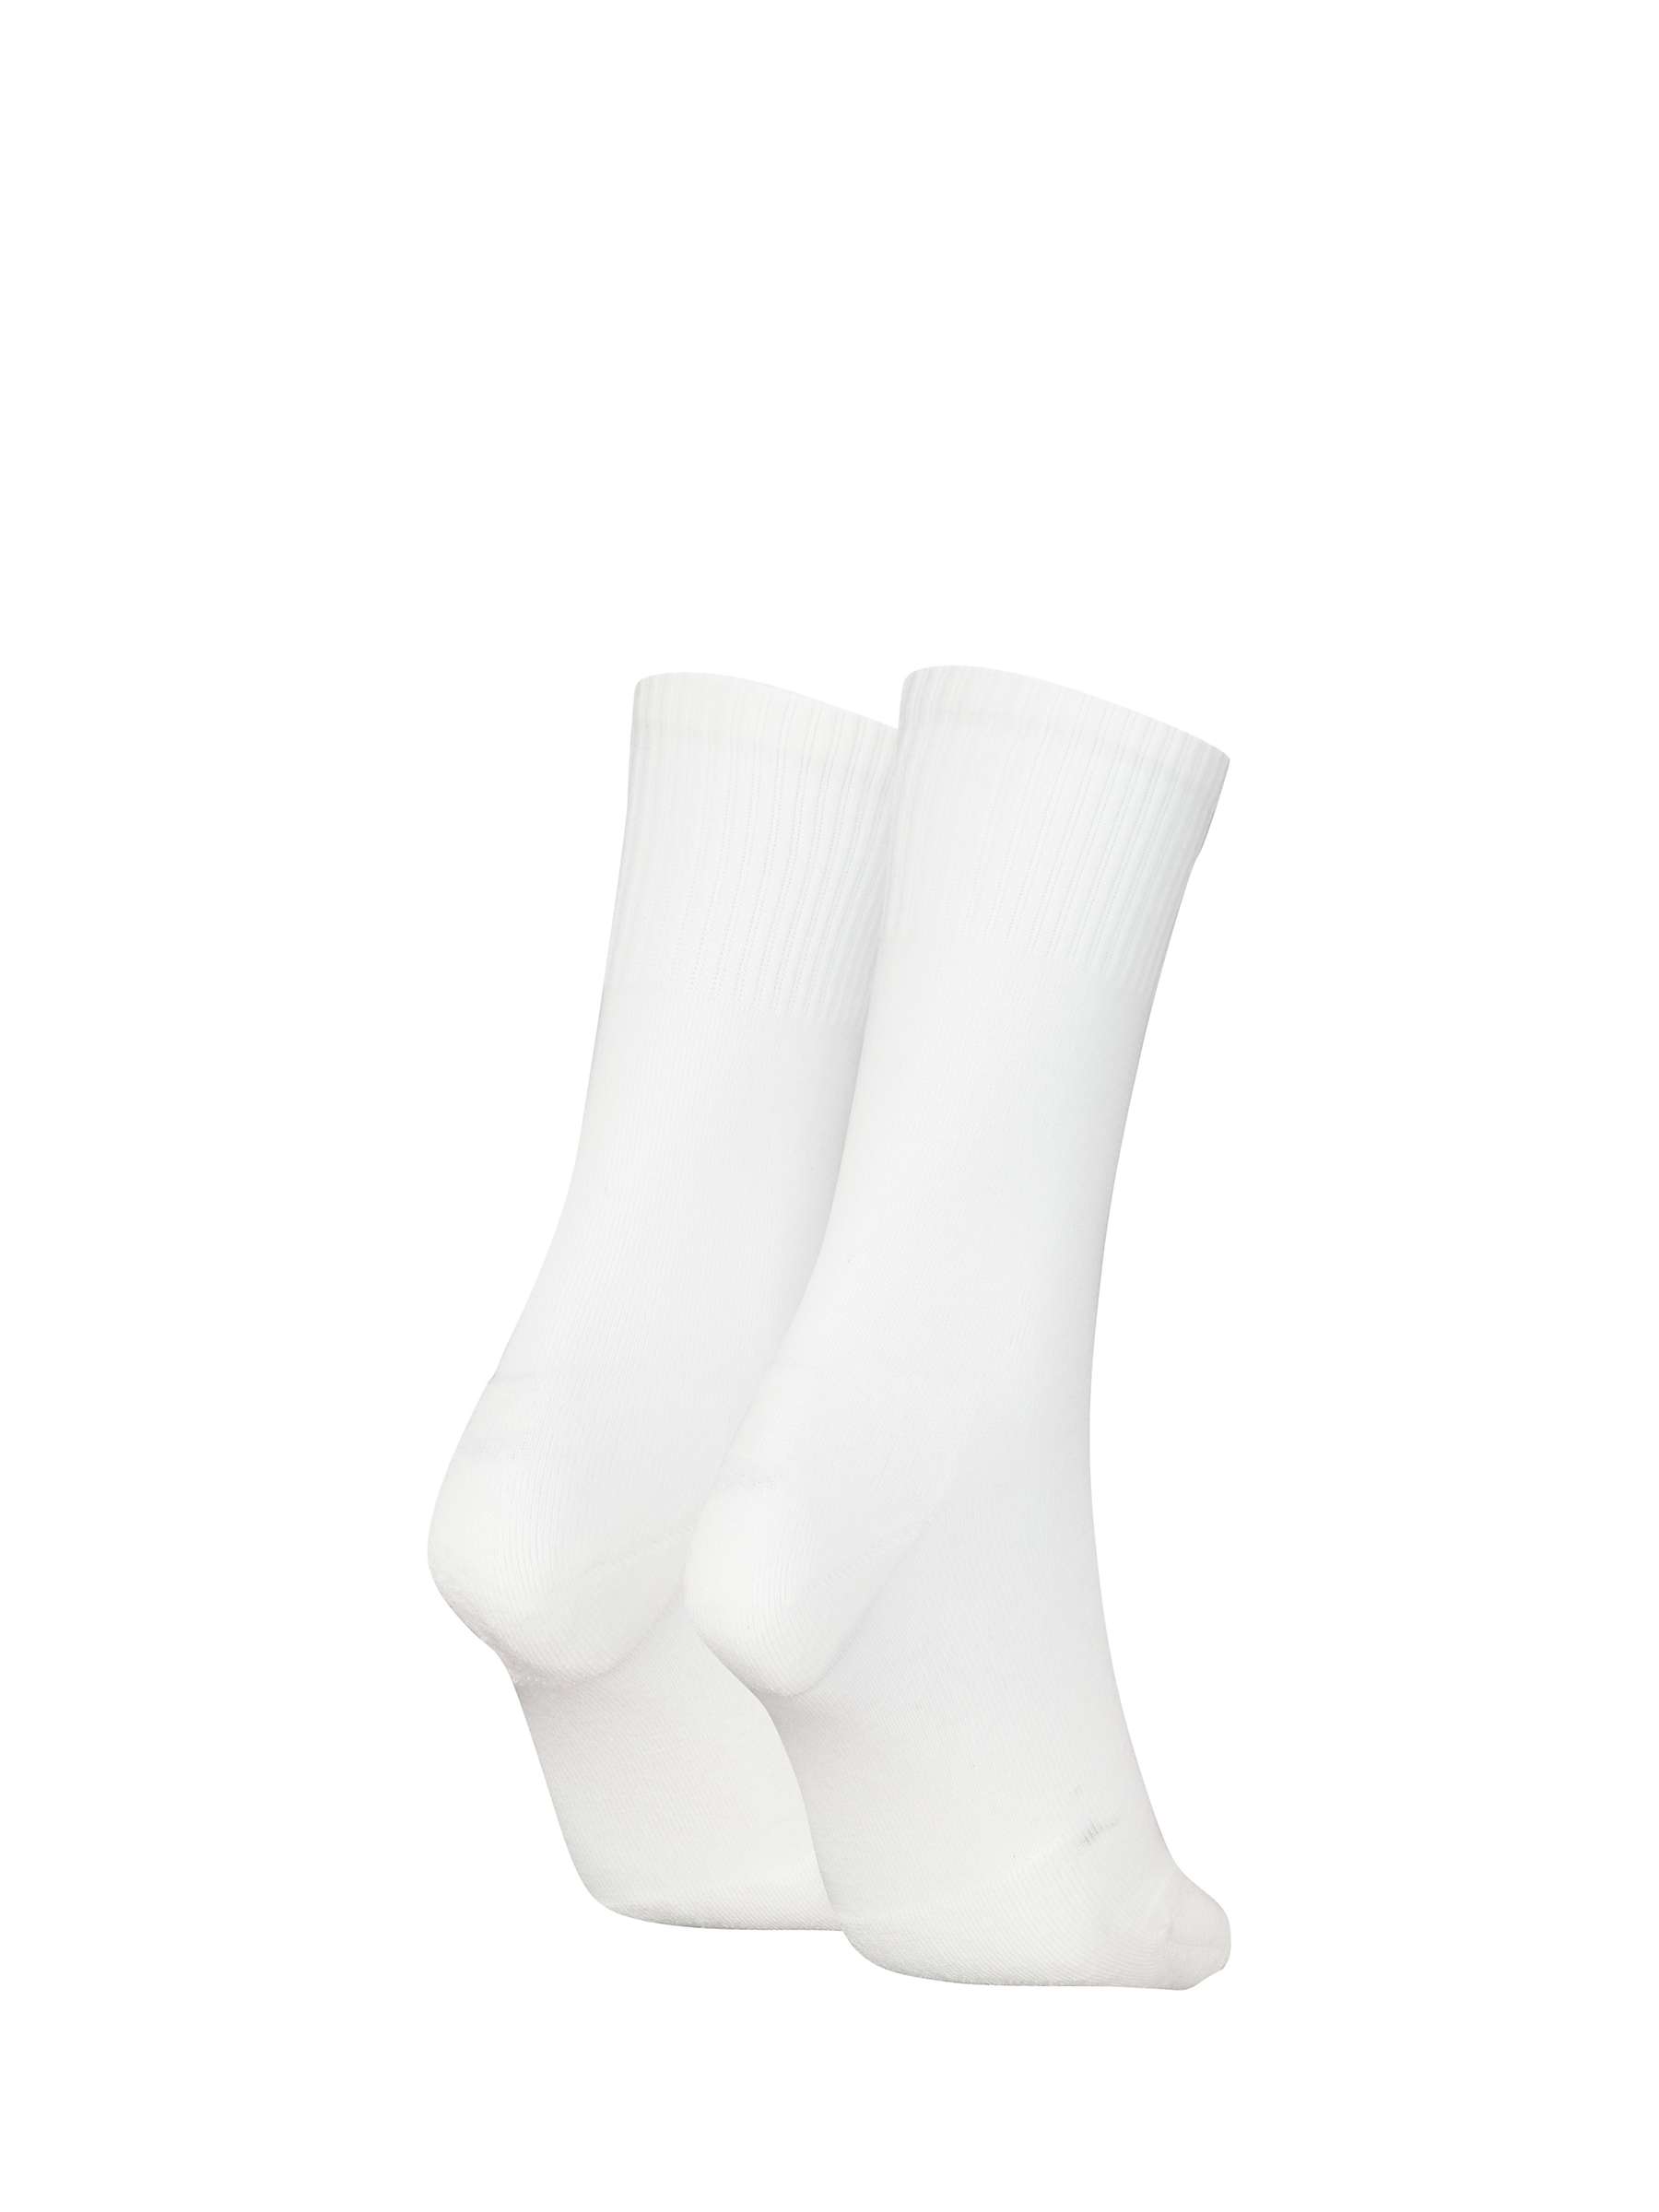 Buy Calvin Klein Pride Logo Socks, Pack of 2, White/Multi Online at johnlewis.com